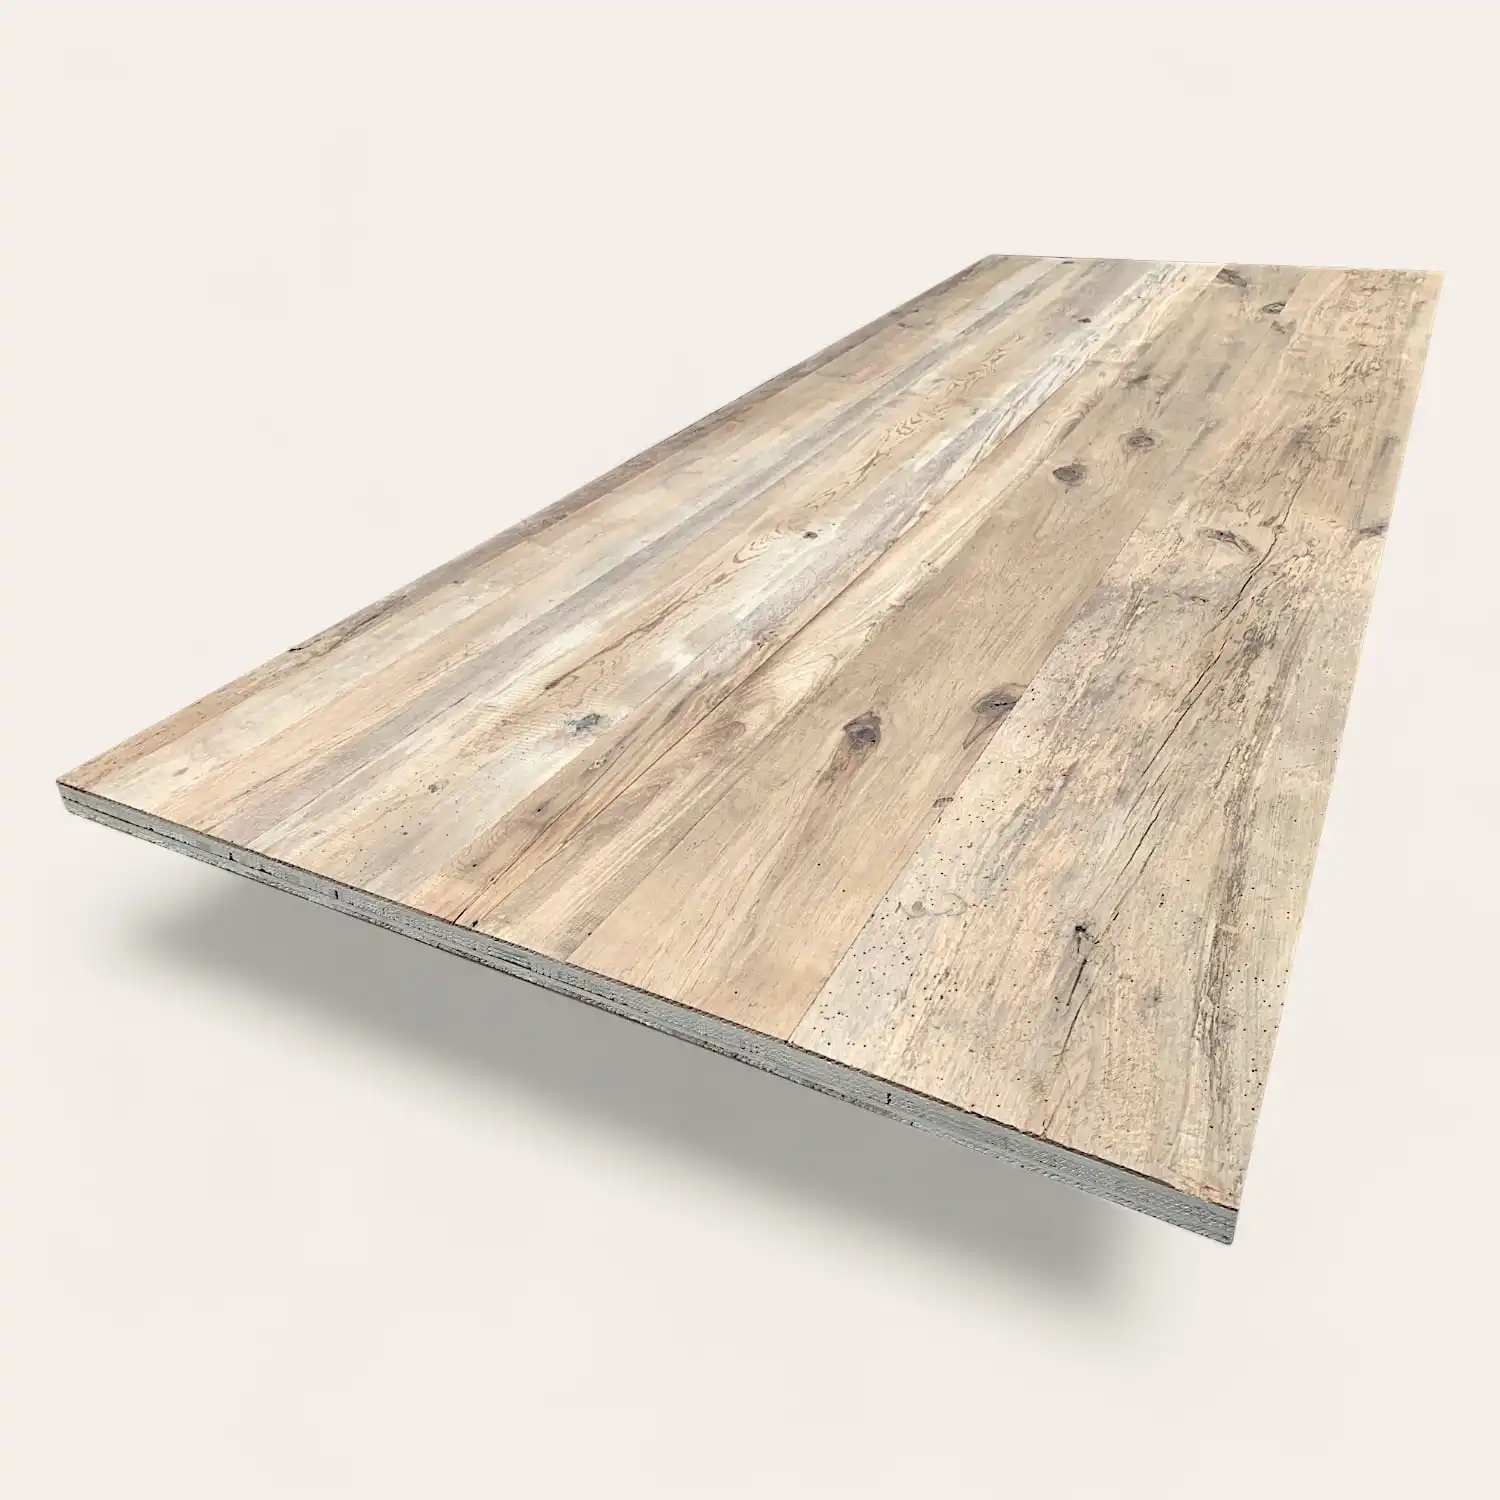  Un panneau stratifié en bois texturé 5 plis vieux bois isolé sur un fond blanc, incliné pour montrer la surface et le bord. 